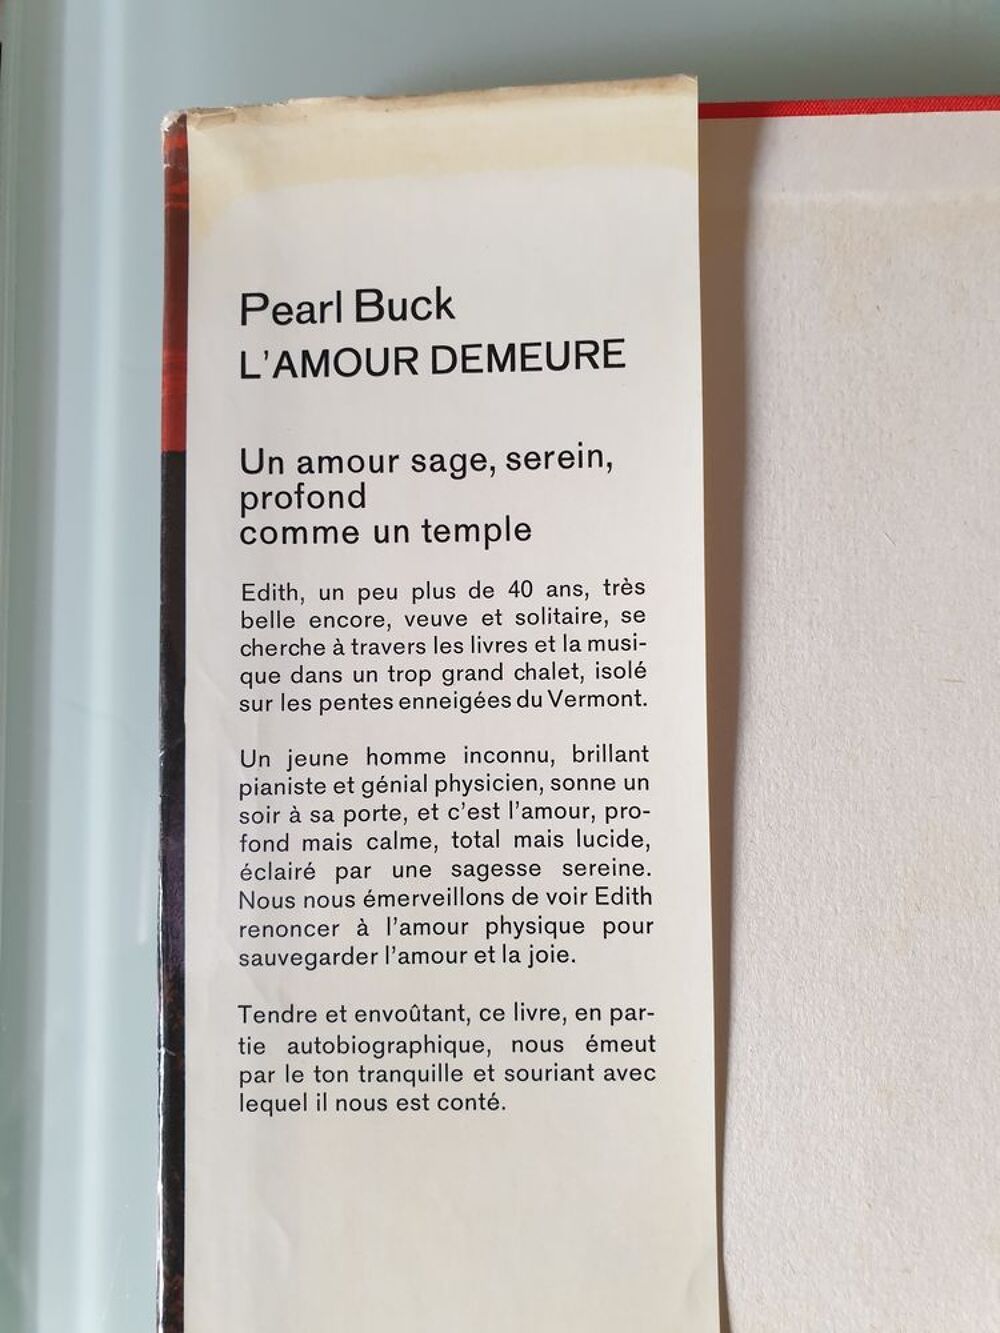 L'amour Demeure - pearl buck
Marseille 9 eme
Livres et BD